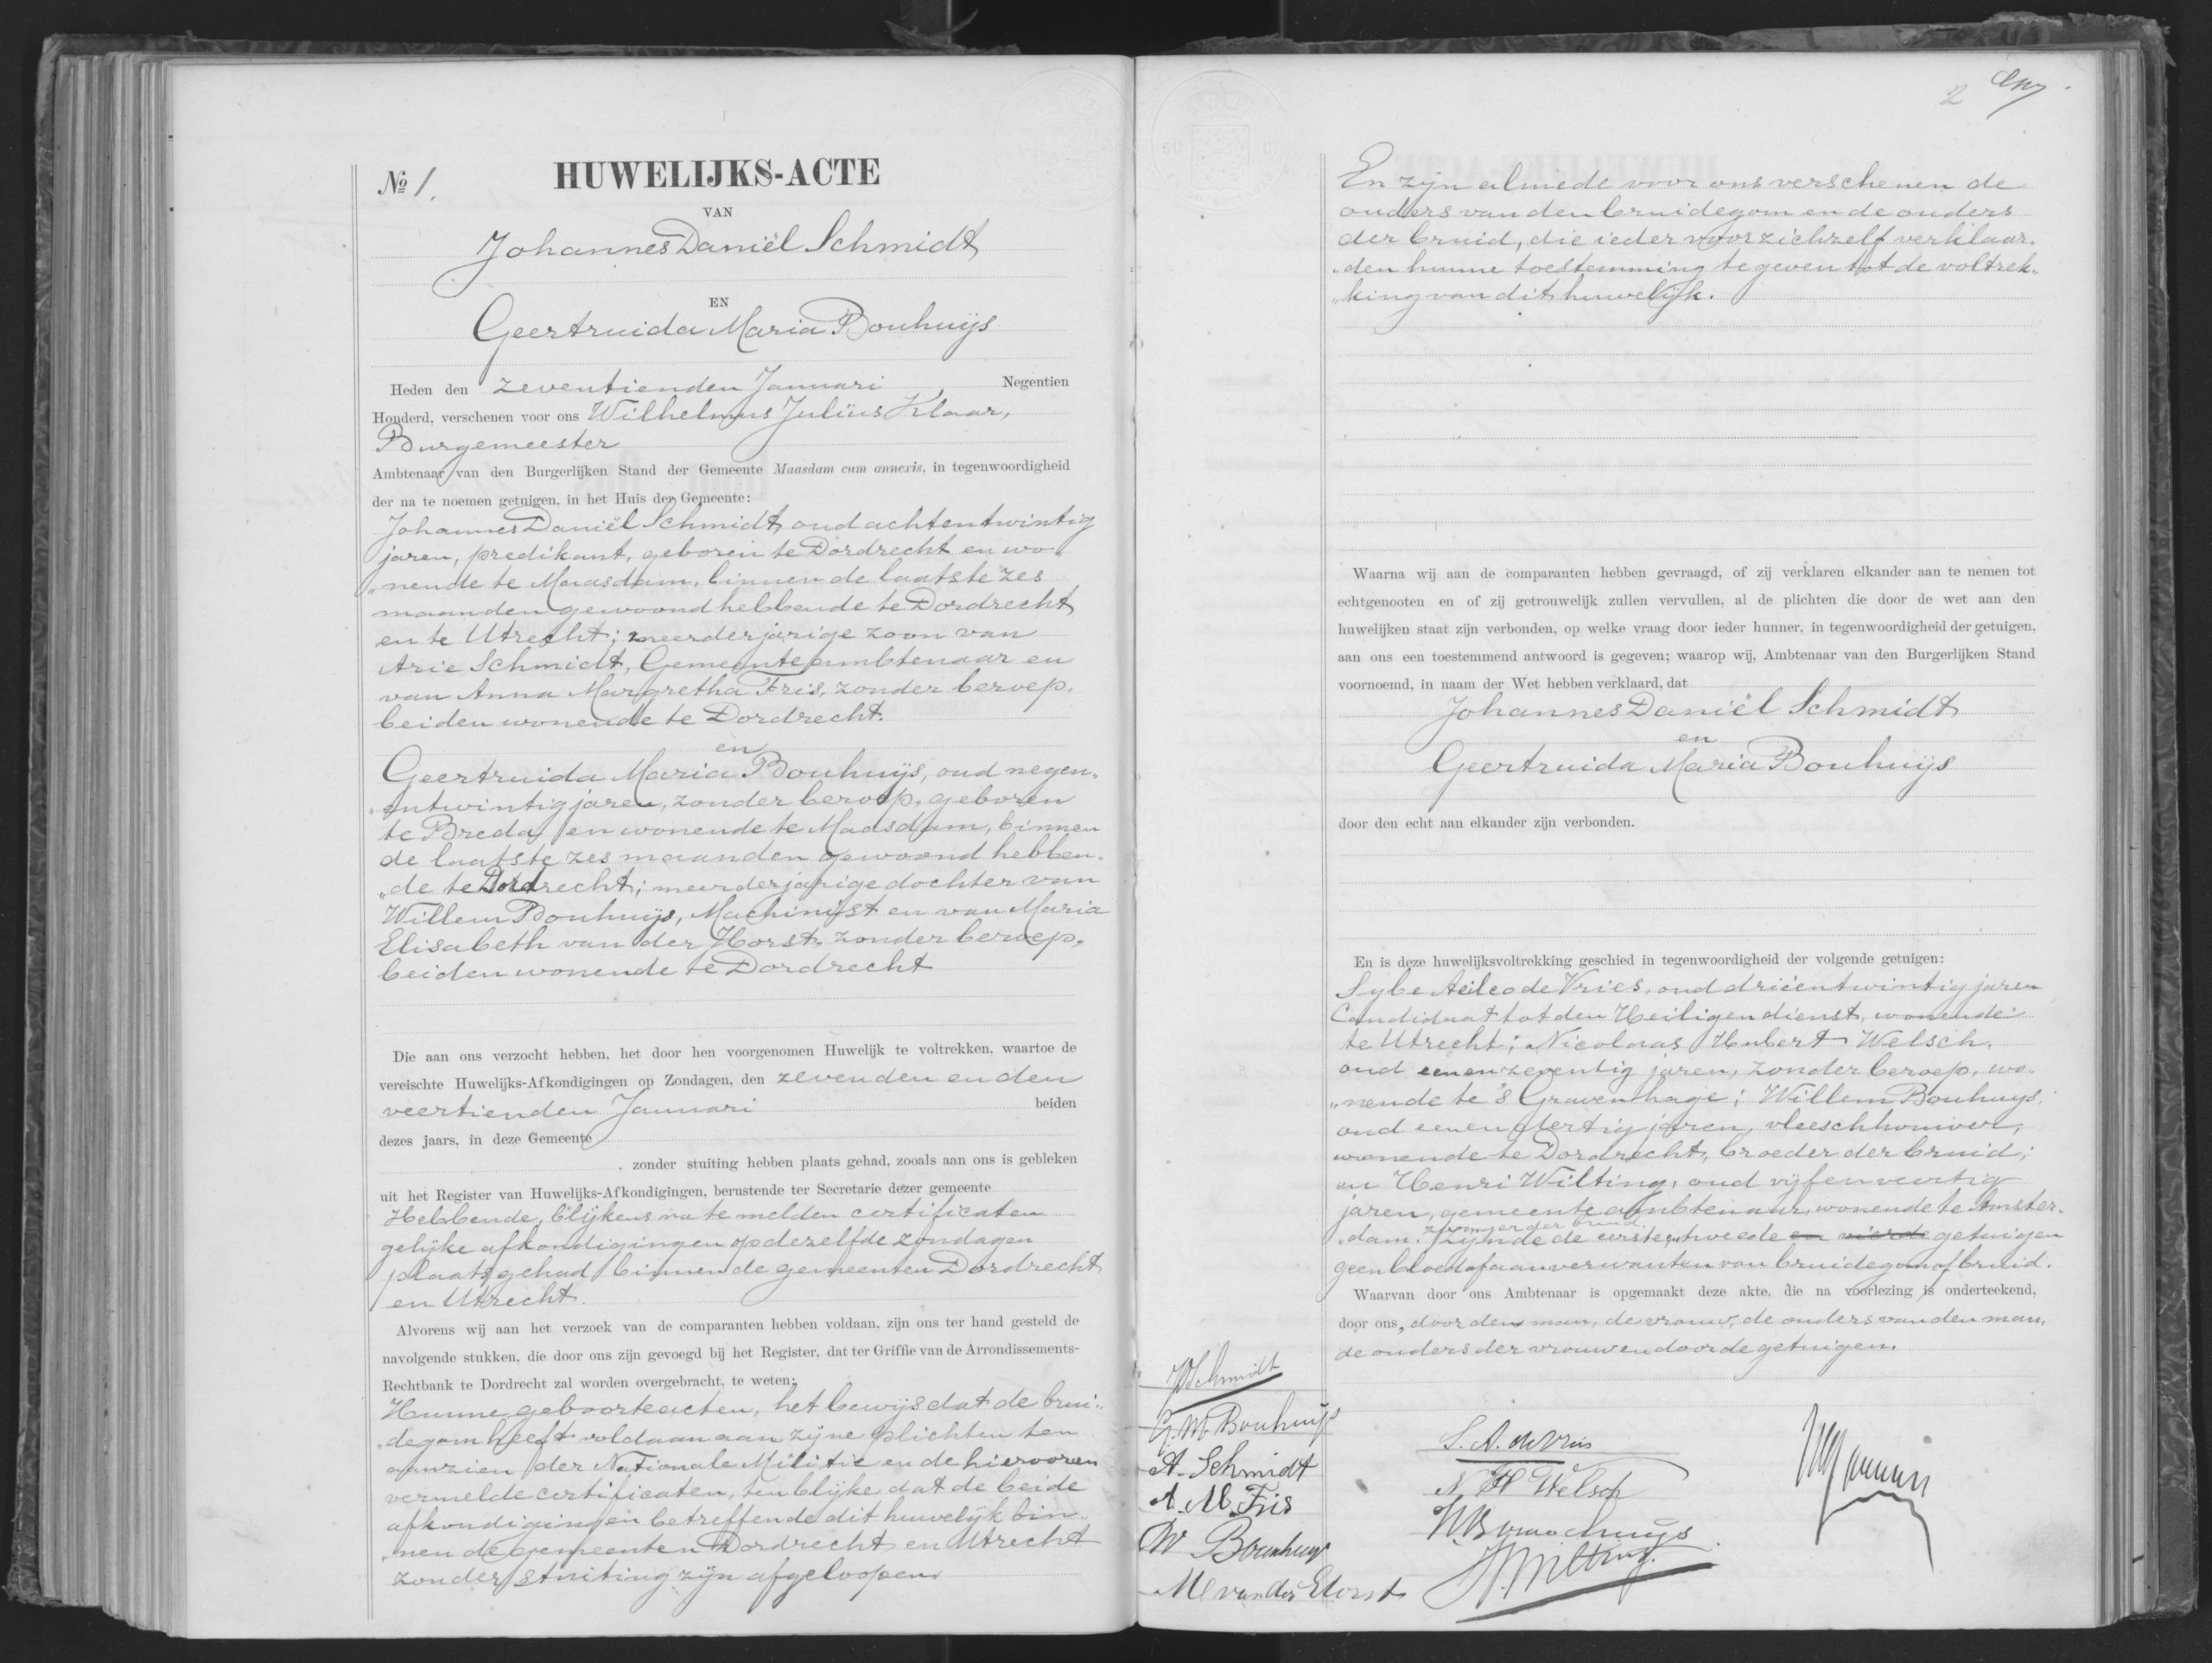 Huwelijksakte van de ouders van Annie M.G. Schmidt. Bron: MyHeritage, collectie Nederland, Huwelijksregister (Burgerlijke Stand), 1811-1940